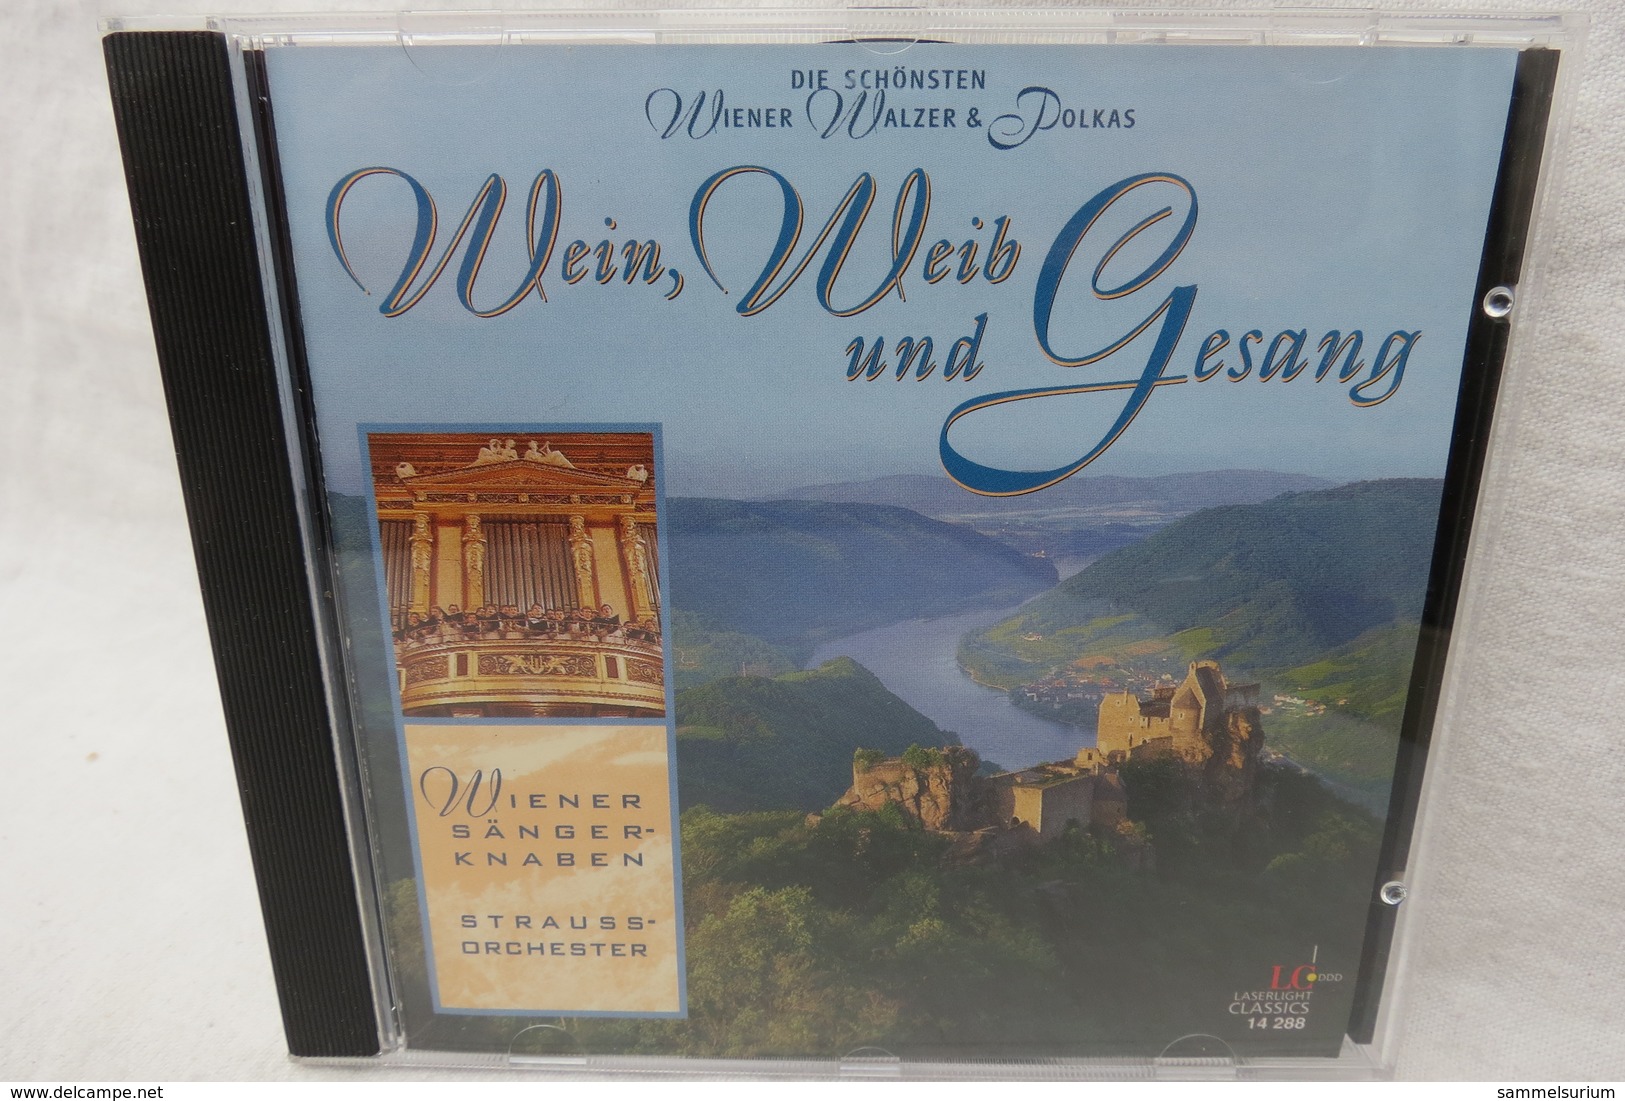 CD "Wiener Sängerknaben / Strauss-Orchester" Wein, Weib Und Gesang, Die Schönsten Wiener Walzer & Polkas - Sonstige - Deutsche Musik